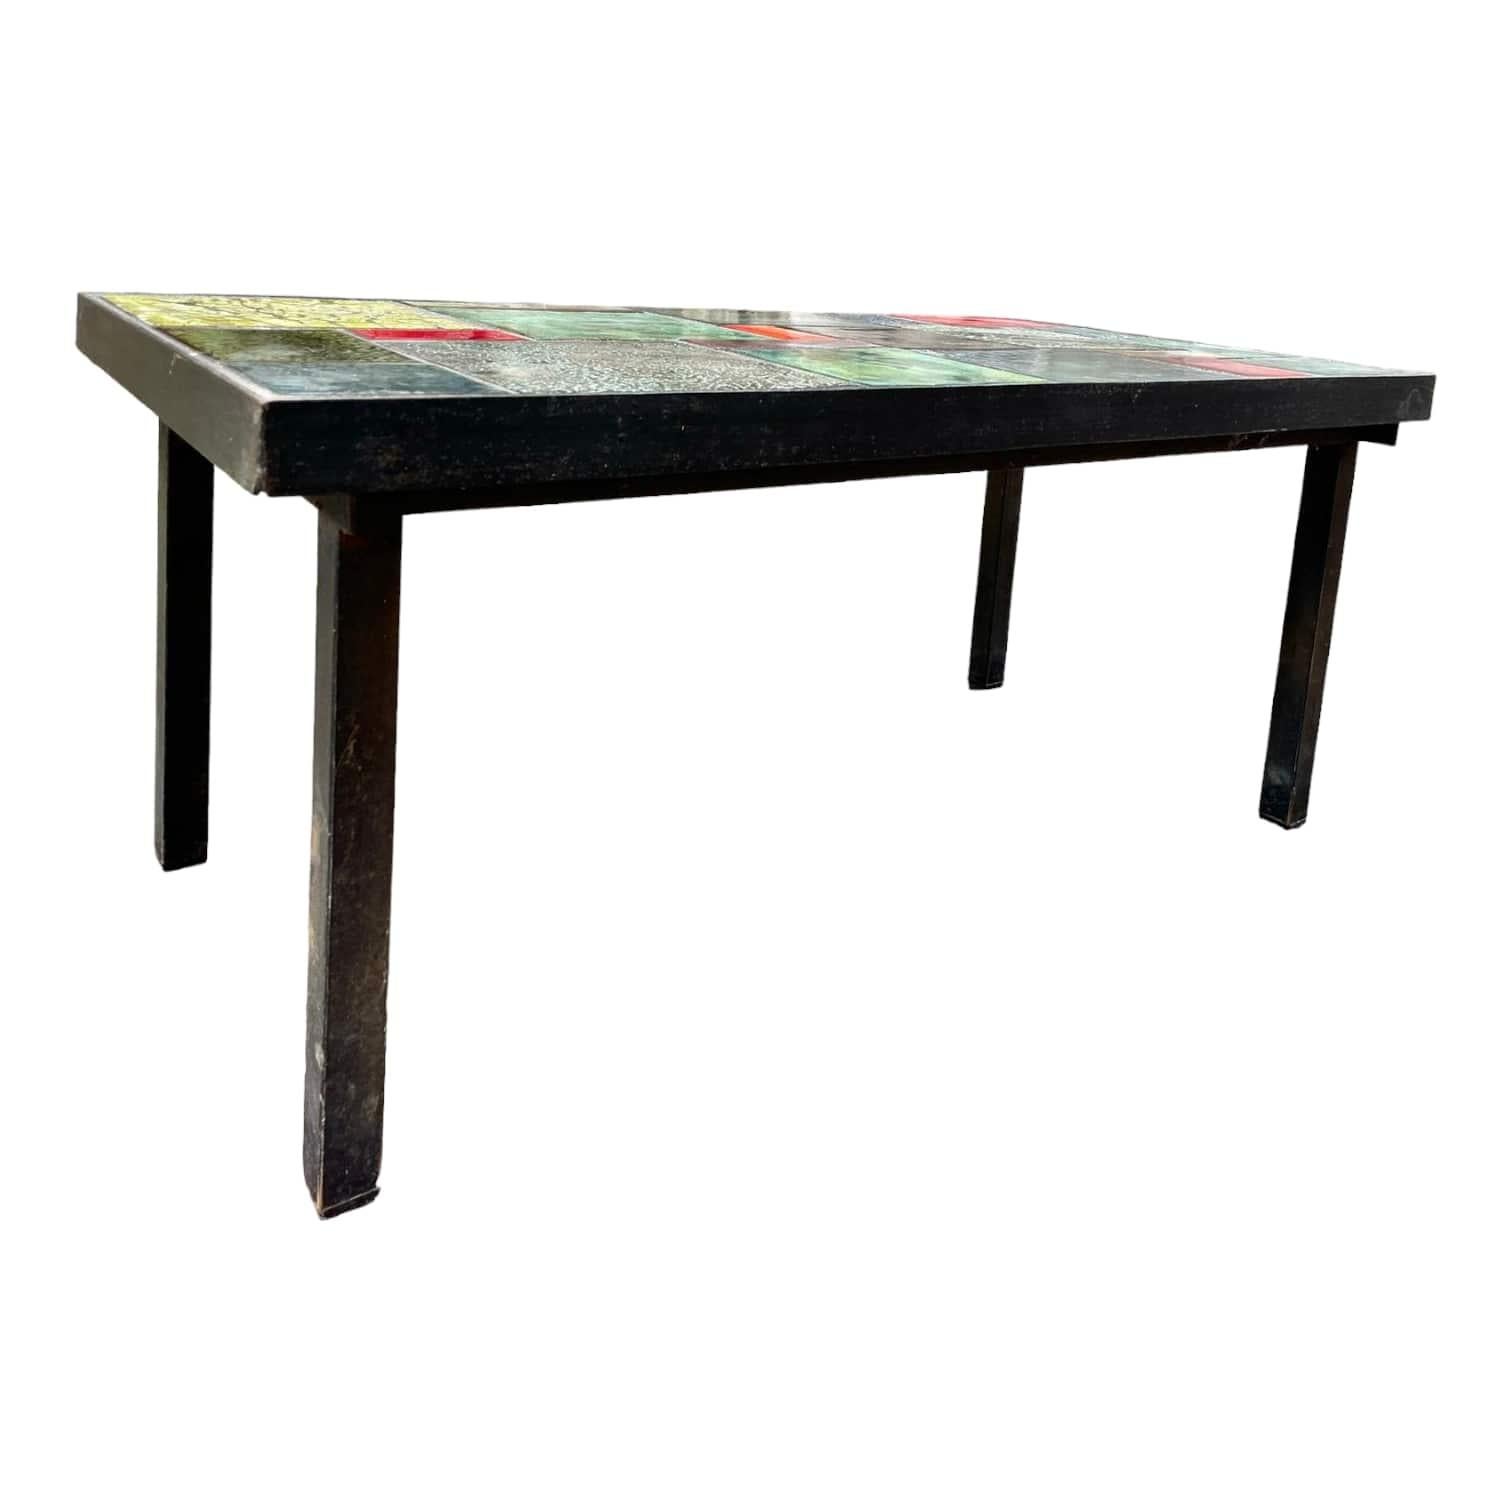 Découvrez ces superbes tables basses en céramique française conçues vers 1970, qui apporteront une touche d'élégance et de charme à votre intérieur. Chaque pièce est soigneusement sélectionnée pour sa qualité et son authenticité, garantissant ainsi